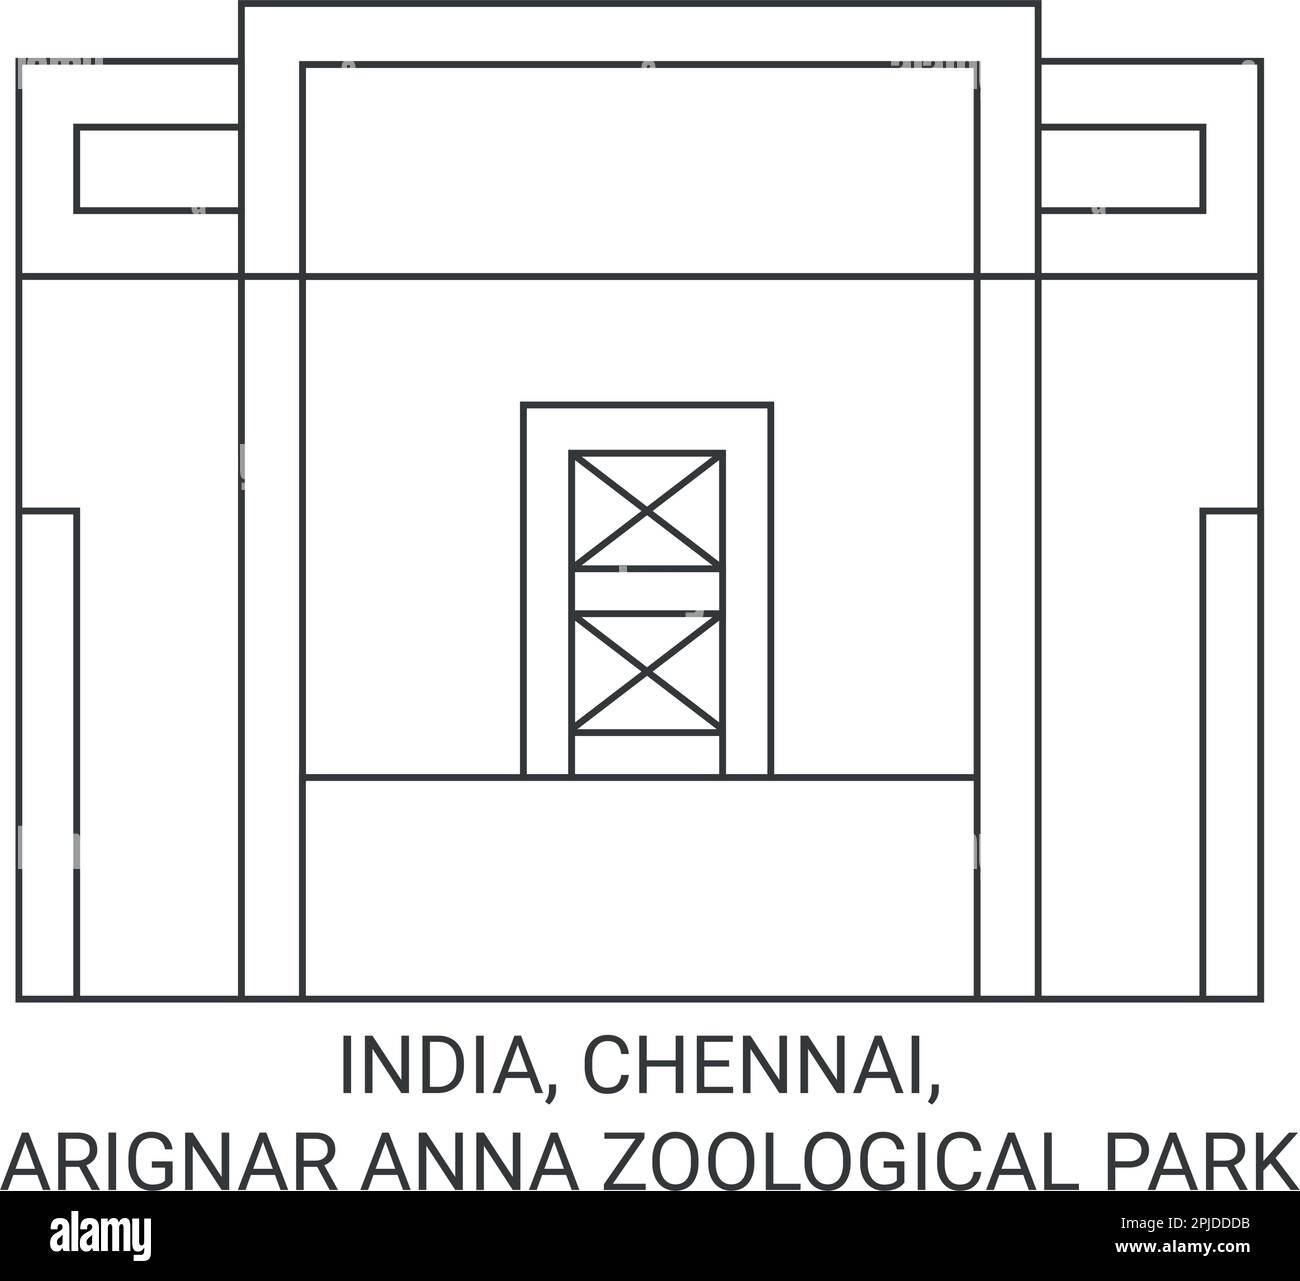 India, Chennai, Arignar Anna Zoological Park travel landmark vector illustration Stock Vector